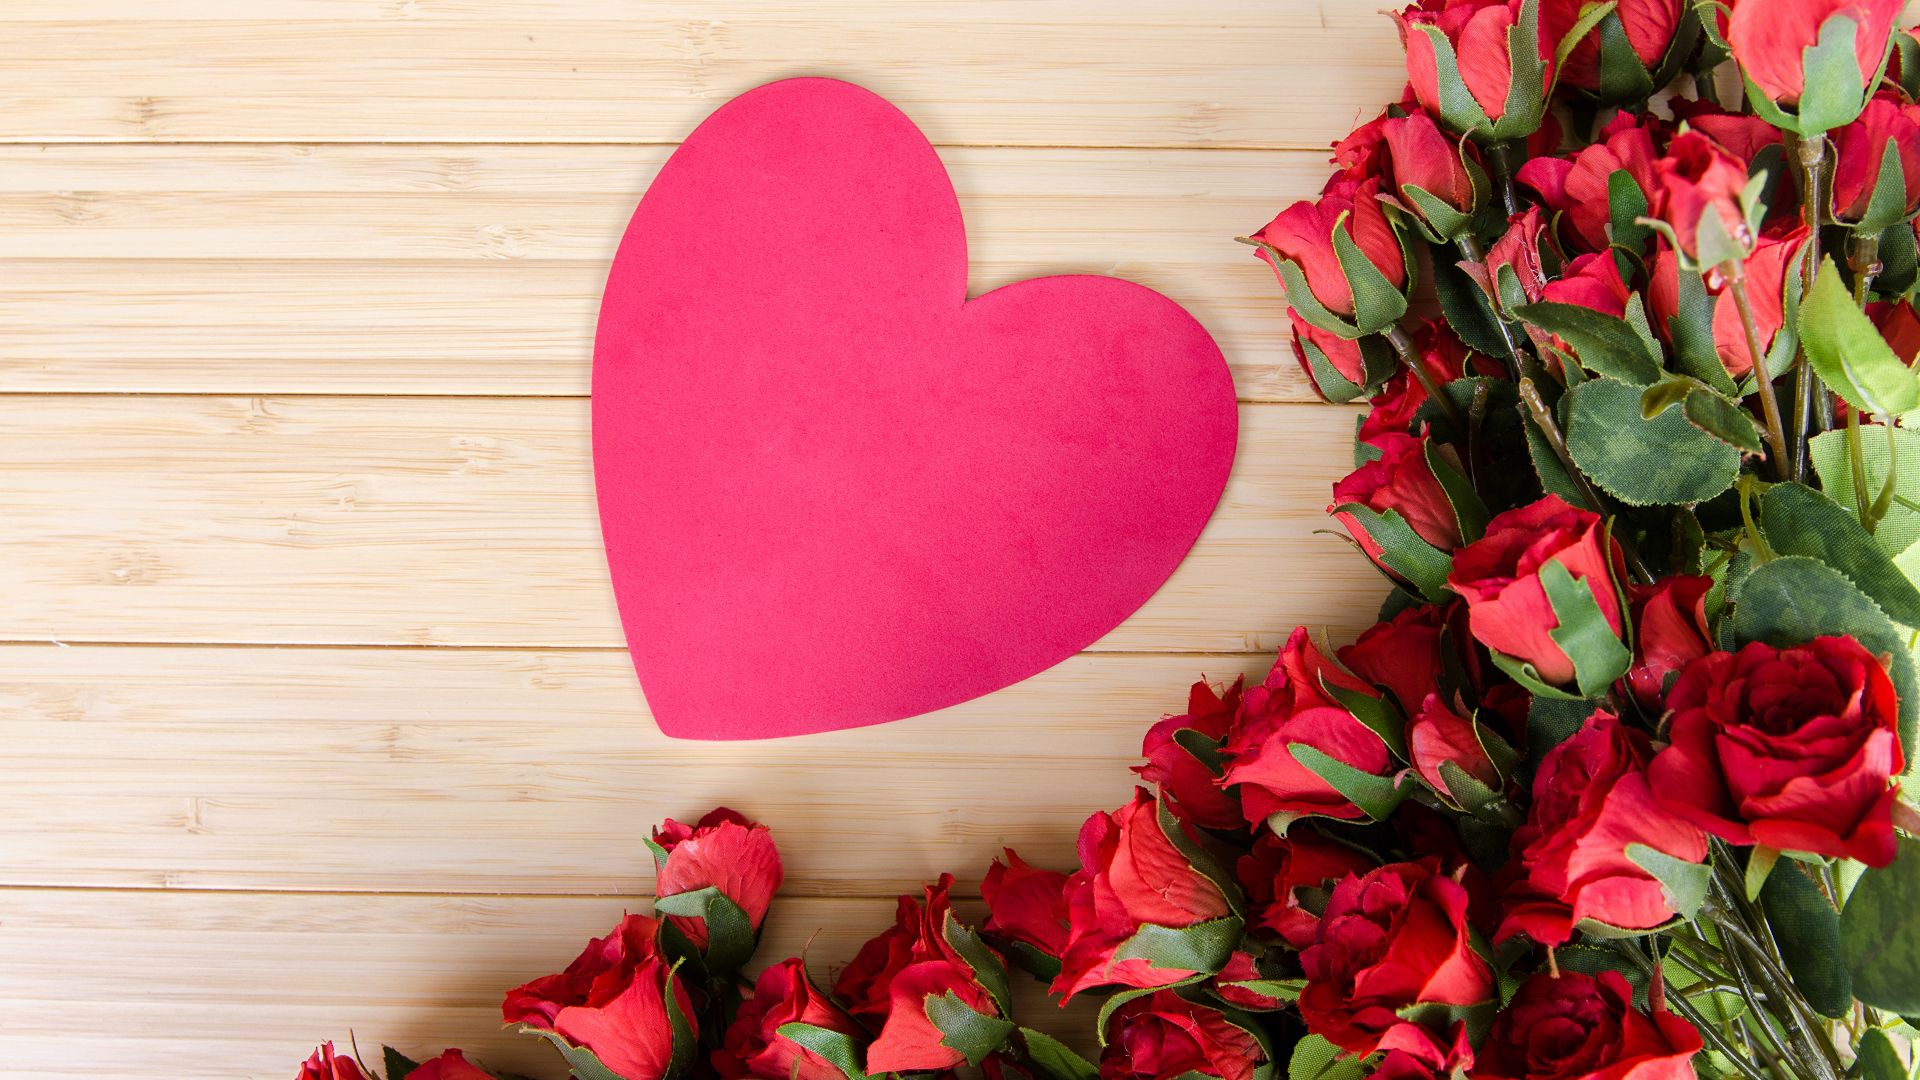 фото любовь, сердце, роза, цветы, love image, heart, rose, flowers, 4k (horizontal)